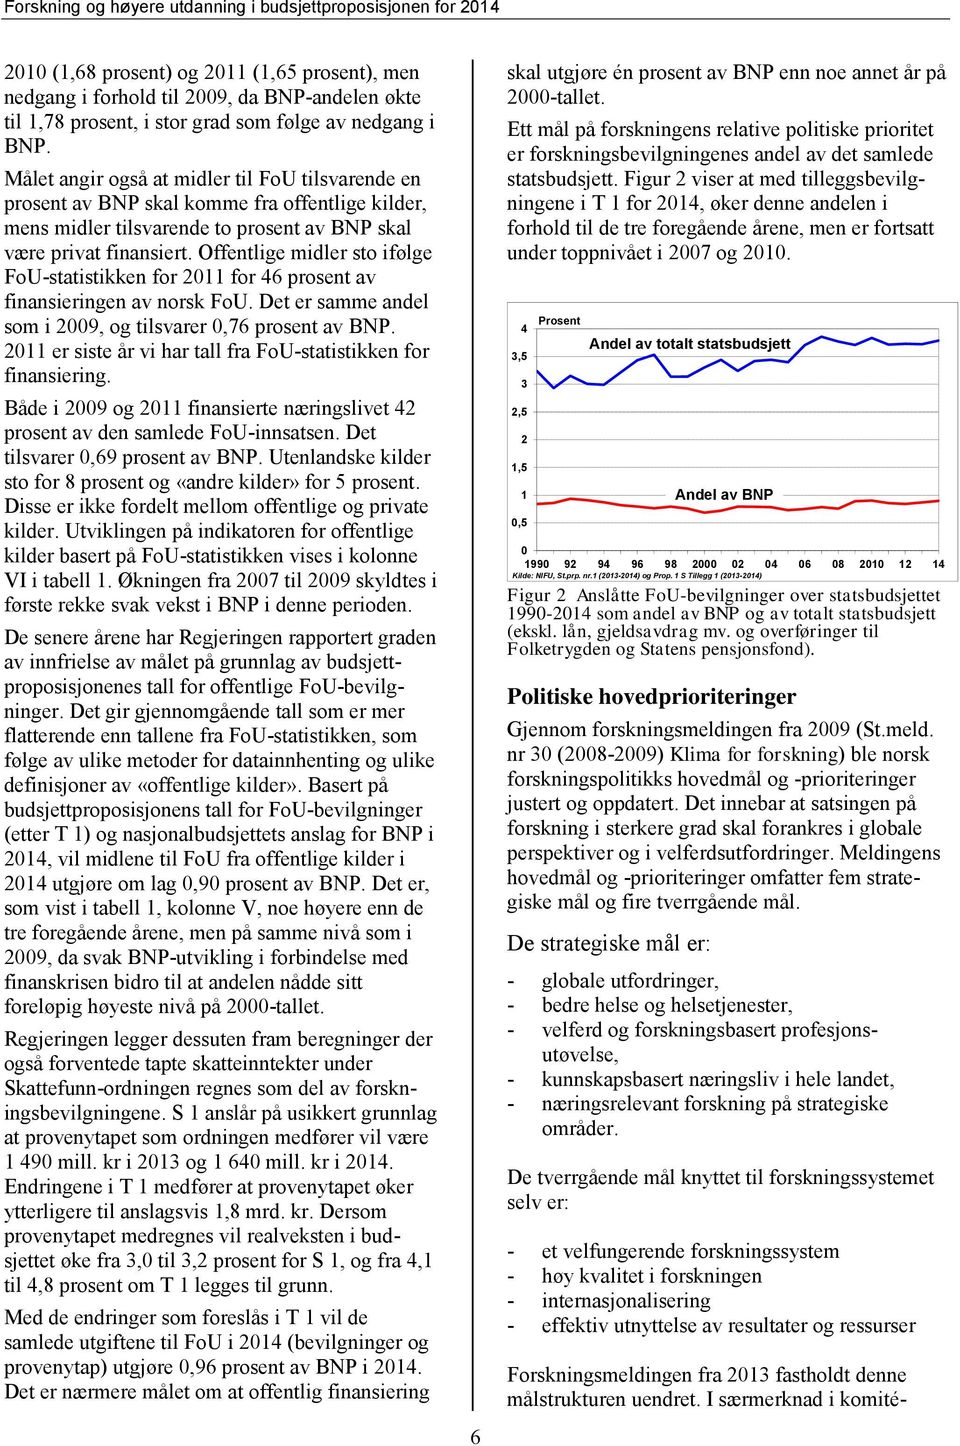 Offentlige midler sto ifølge FoU-statistikken for 2011 for 46 prosent av finansieringen av norsk FoU. Det er samme andel som i 2009, og tilsvarer 0,76 prosent av BNP.